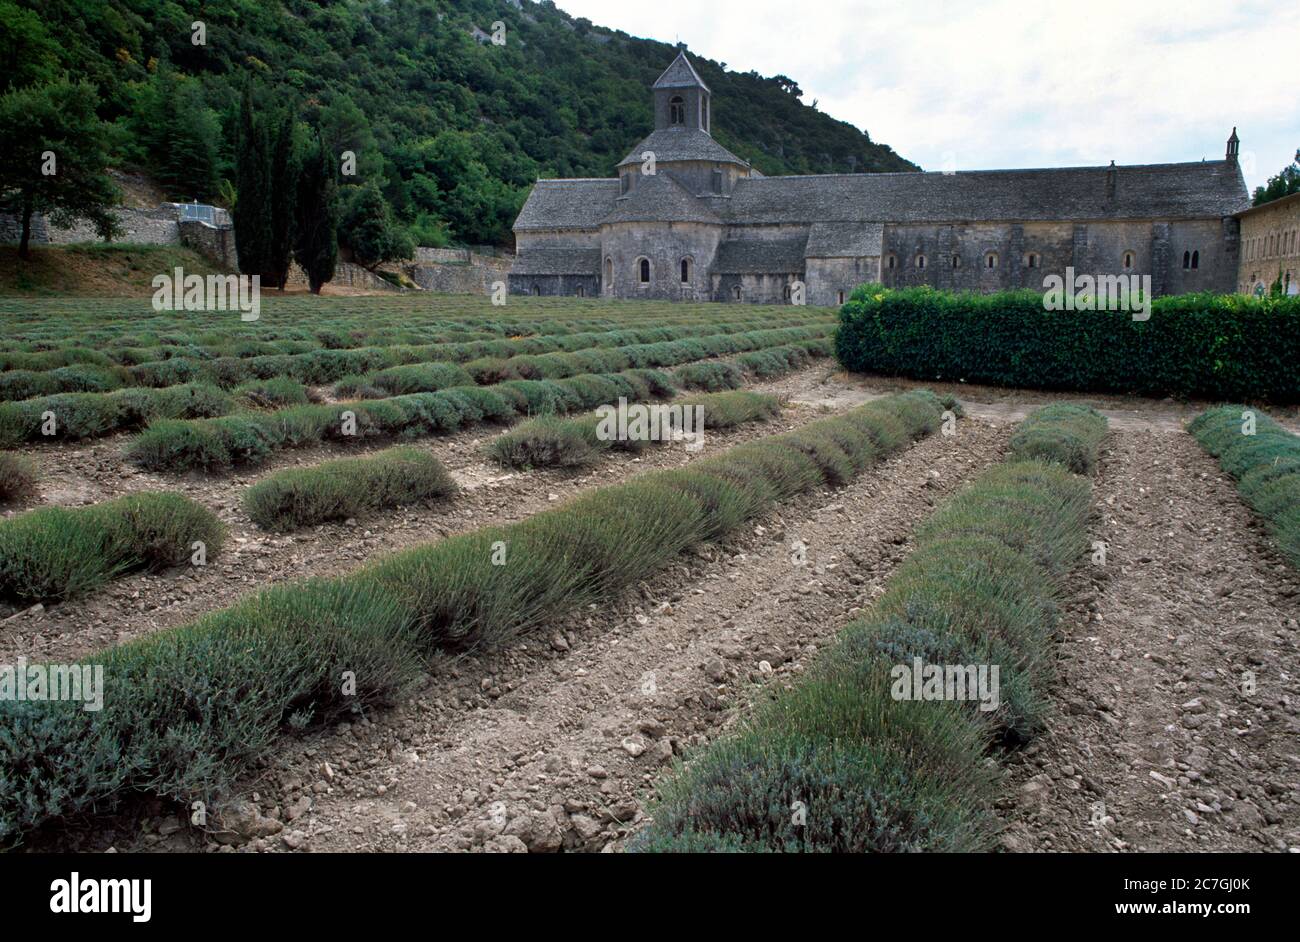 Abbaye de Senanque Vaucluse Provence Francia Lavanda monjes cistercienses que vivían aquí vivían bajo la regla simplista de San Benito Foto de stock